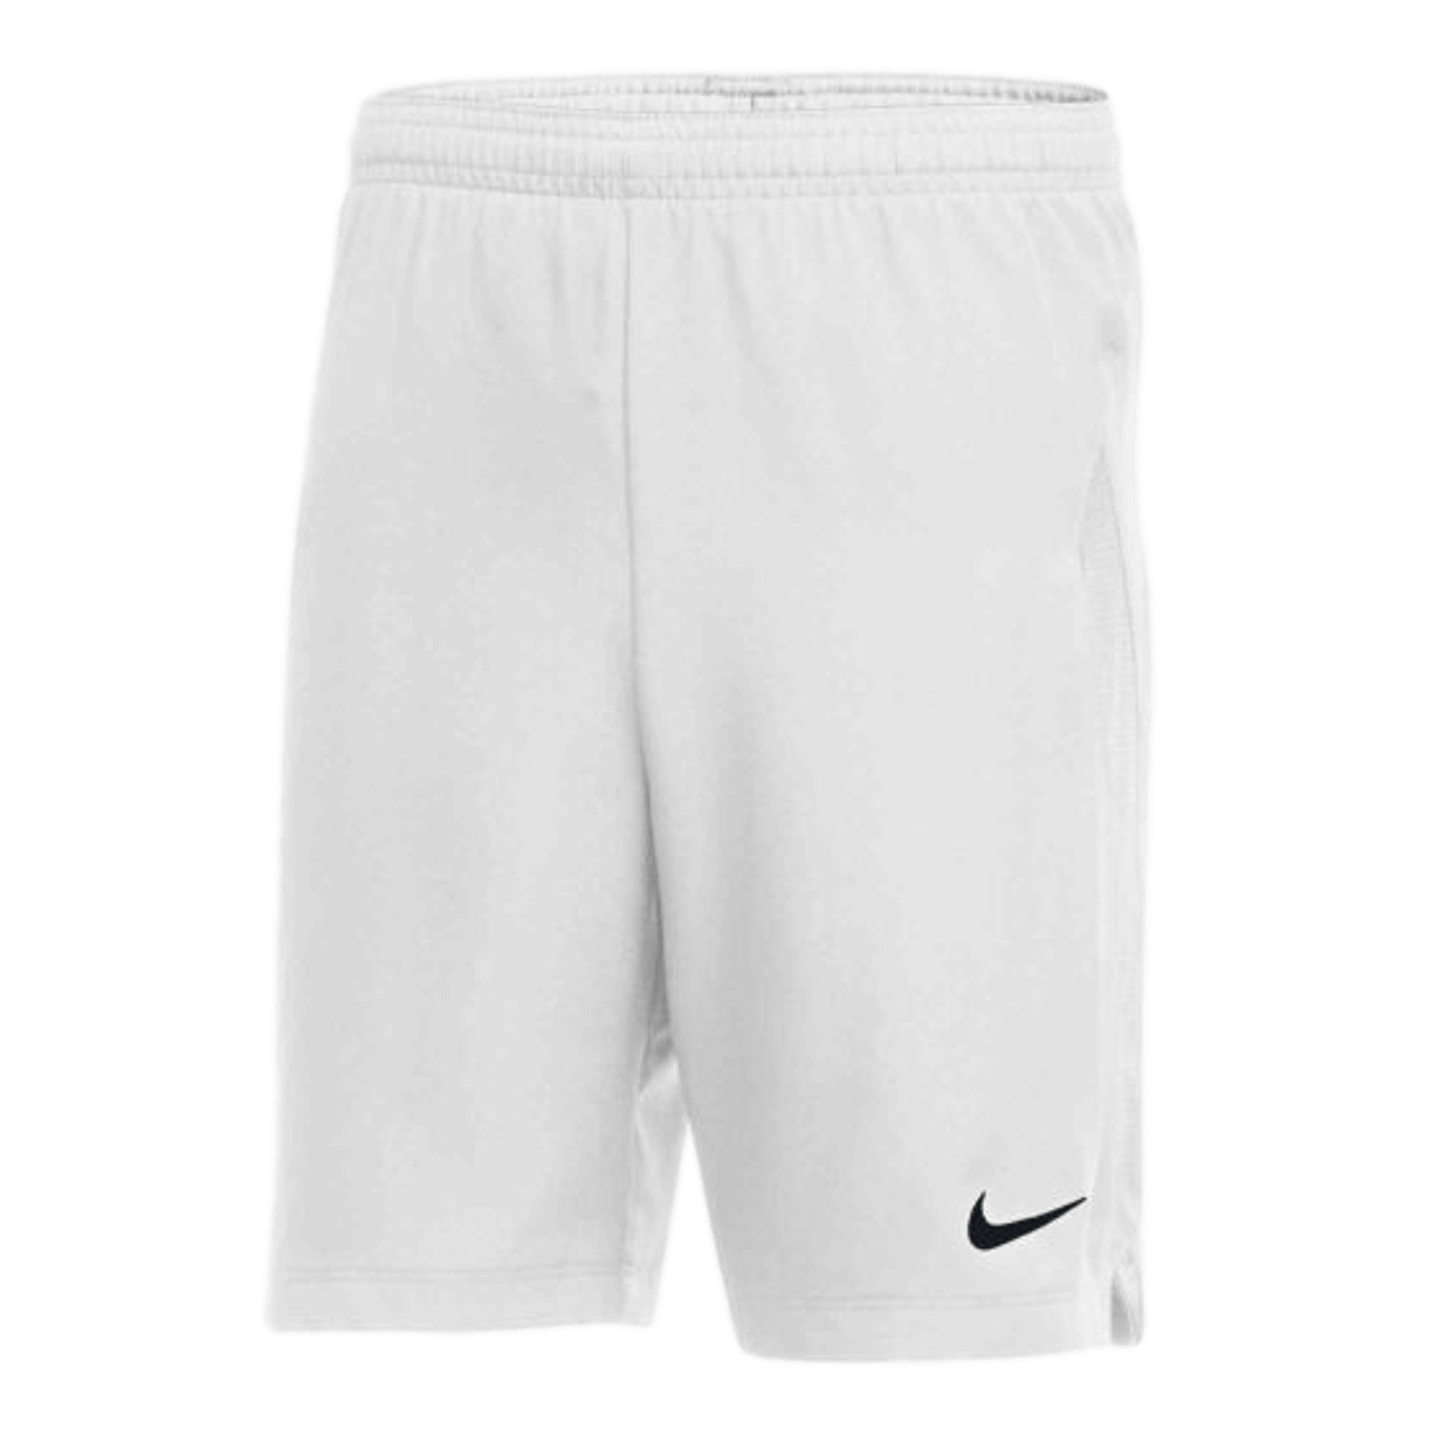 Nike Woven Laser IV Youth Shorts